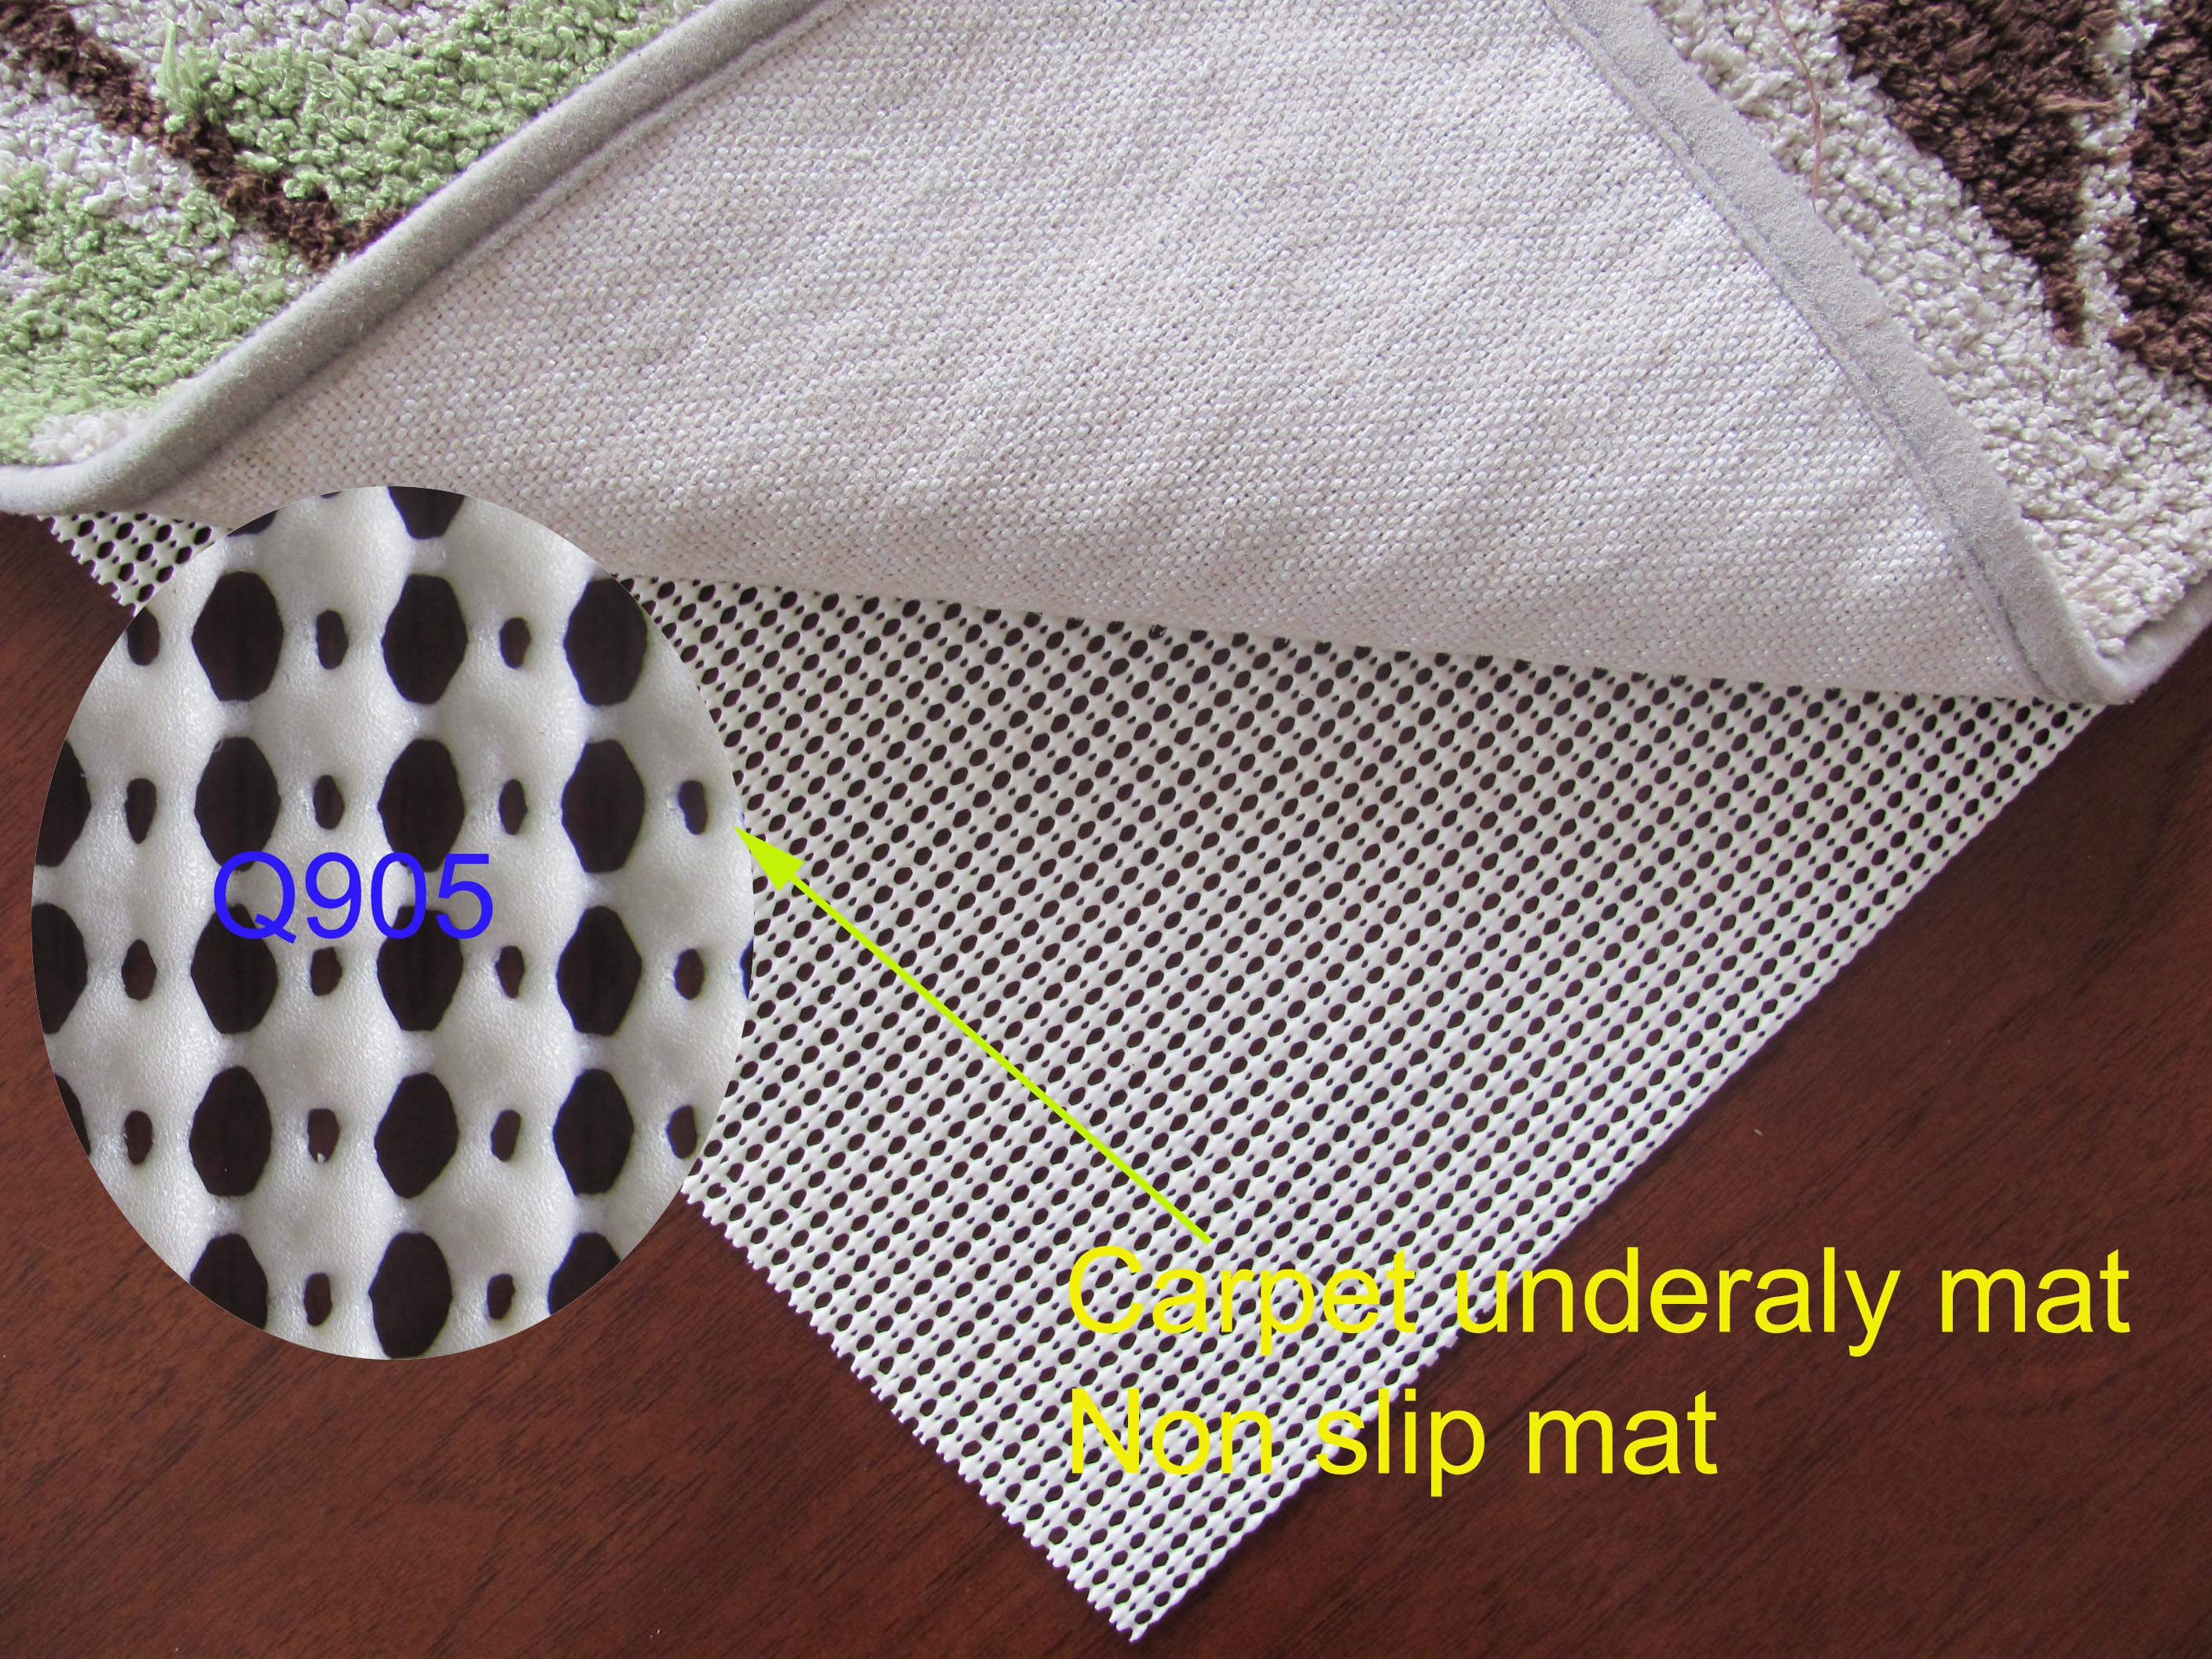 La sous-couche de tapis à trous fins en forme de diamant s'applique au dessous du tapis, qui est antidérapant, résistant à l'usure et durable